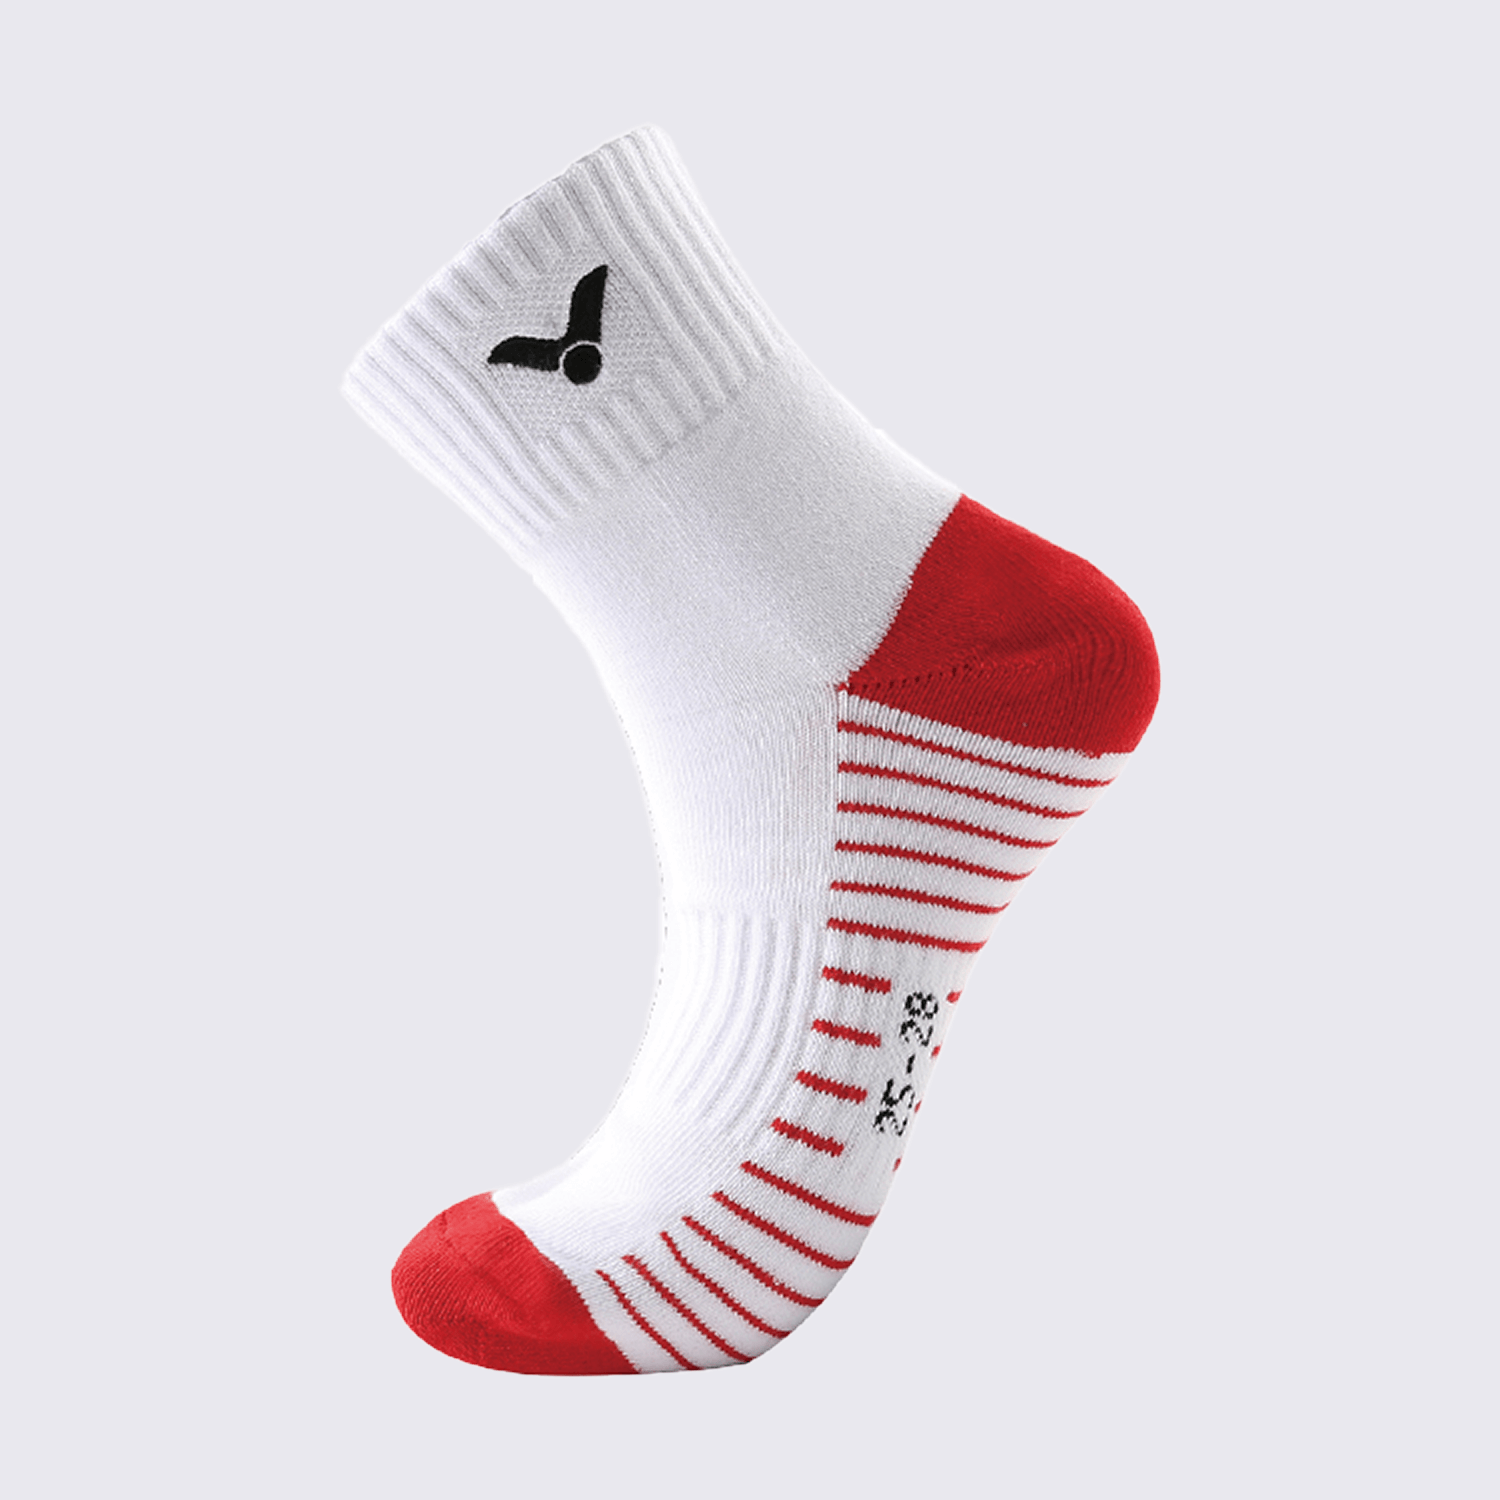 Victor Sports Socks Medium SK251D (Red)